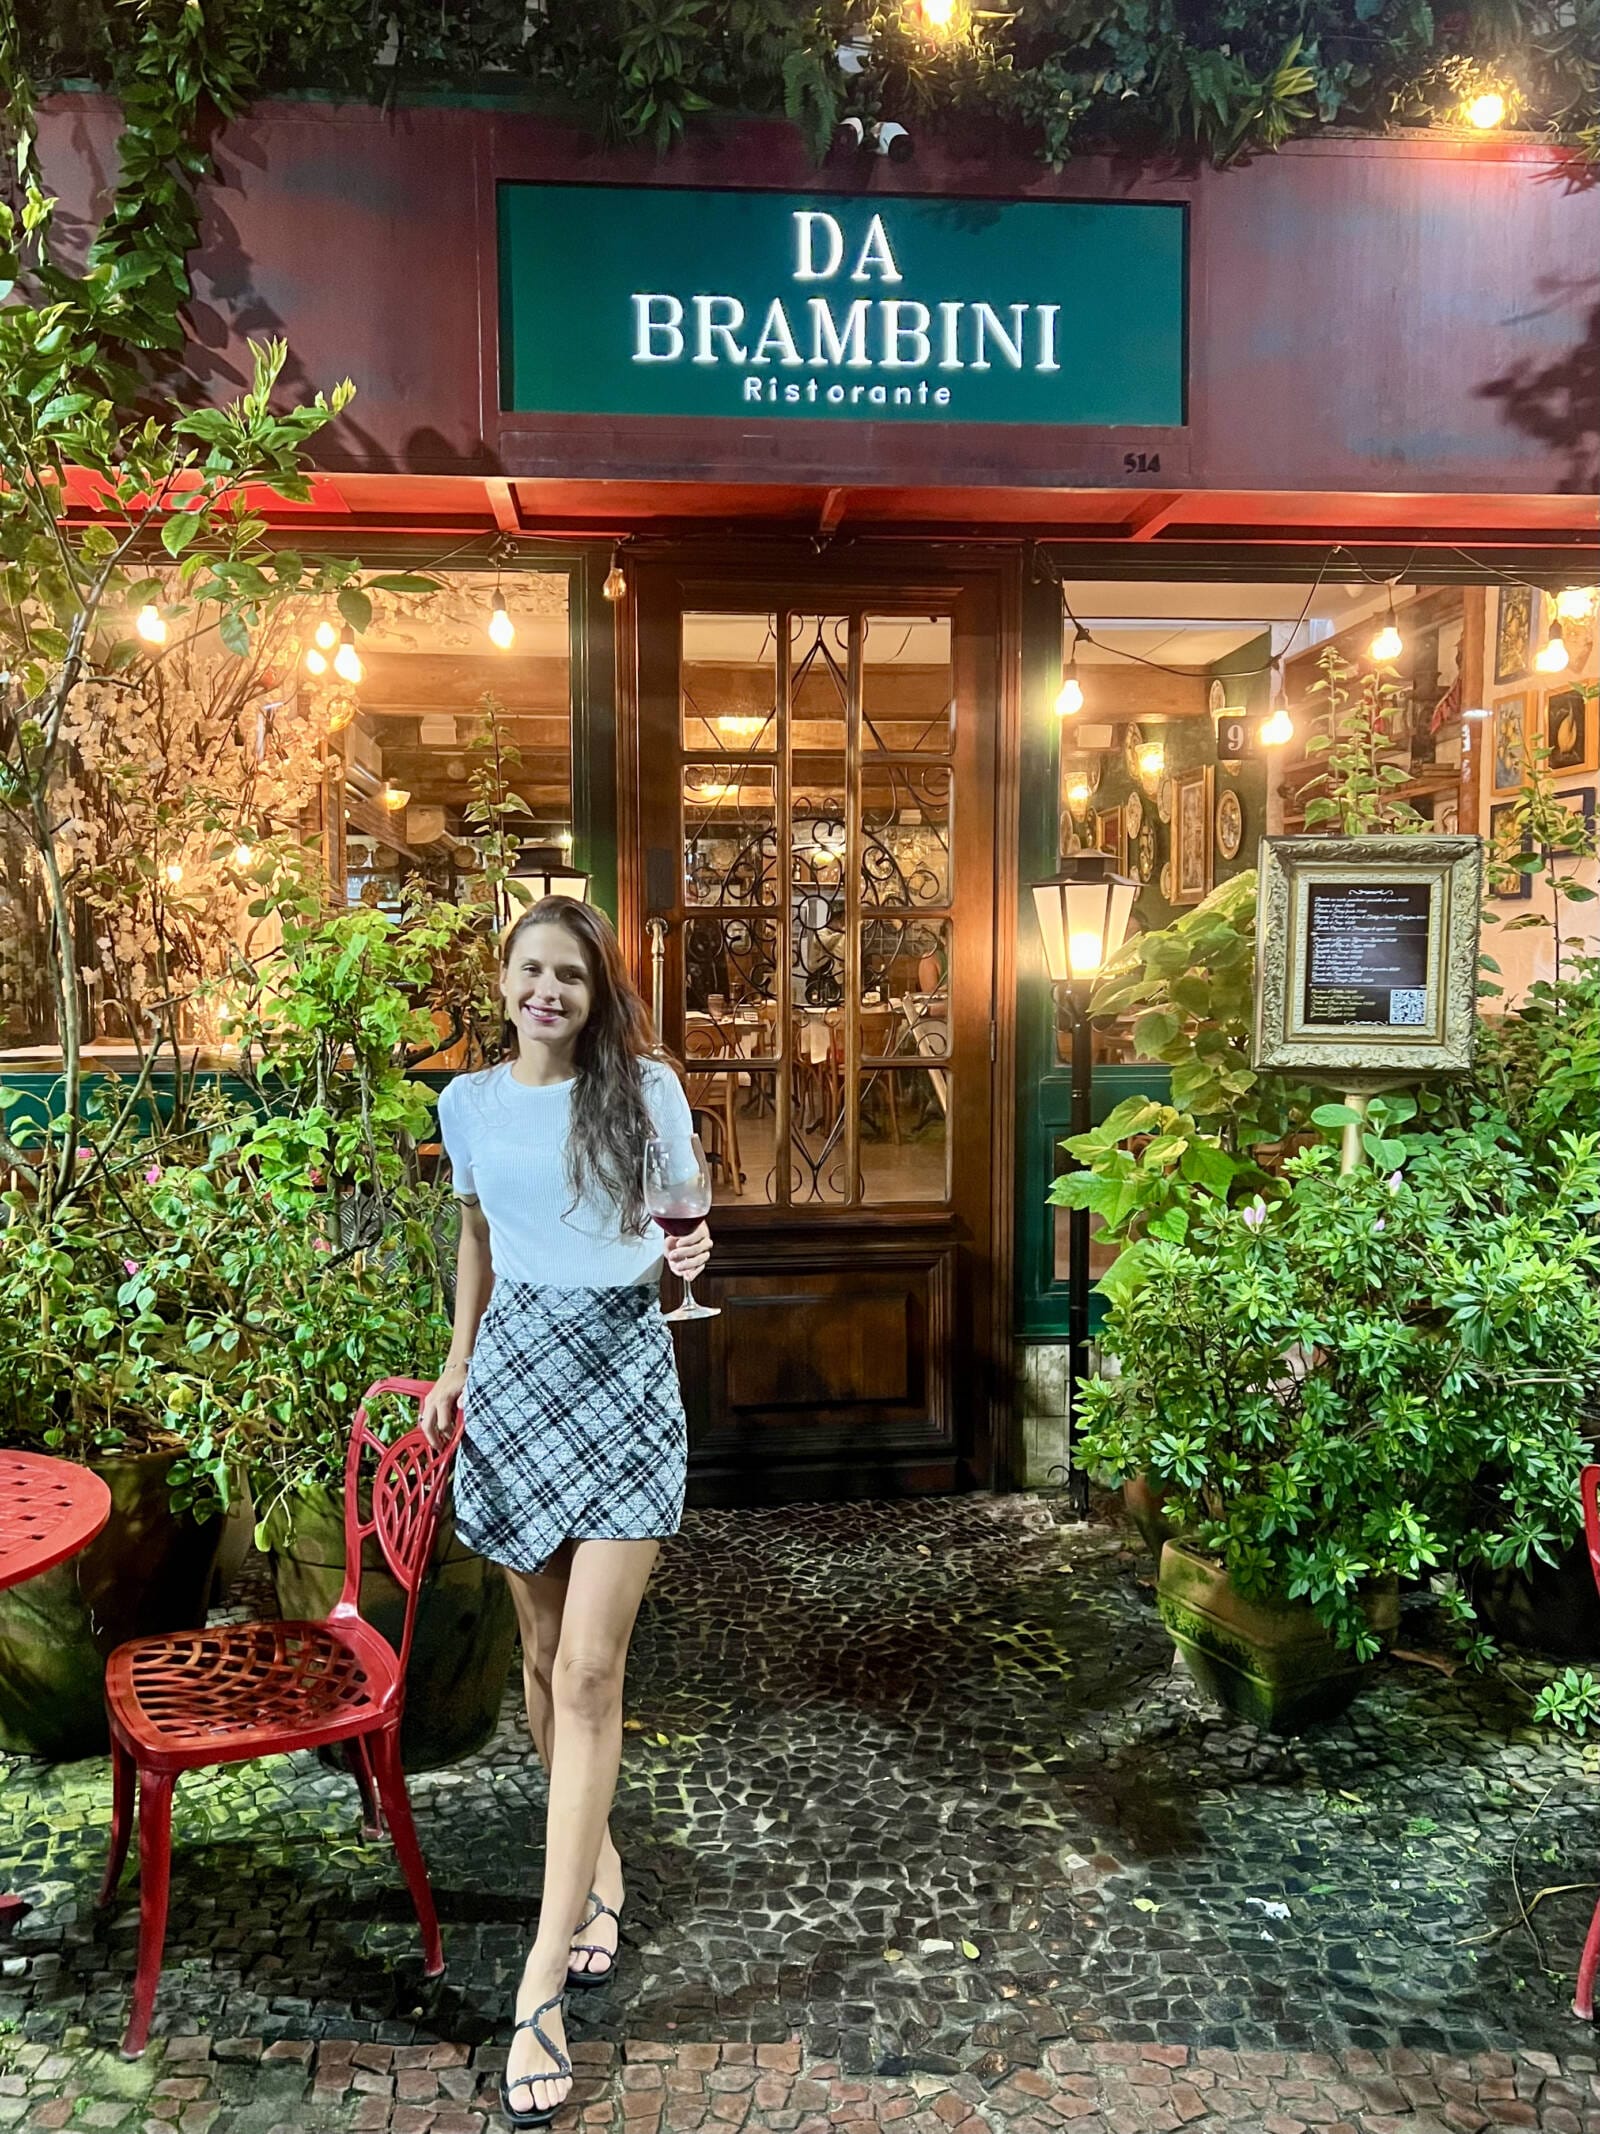 Da Brambini: clássico restaurante italiano no Leme